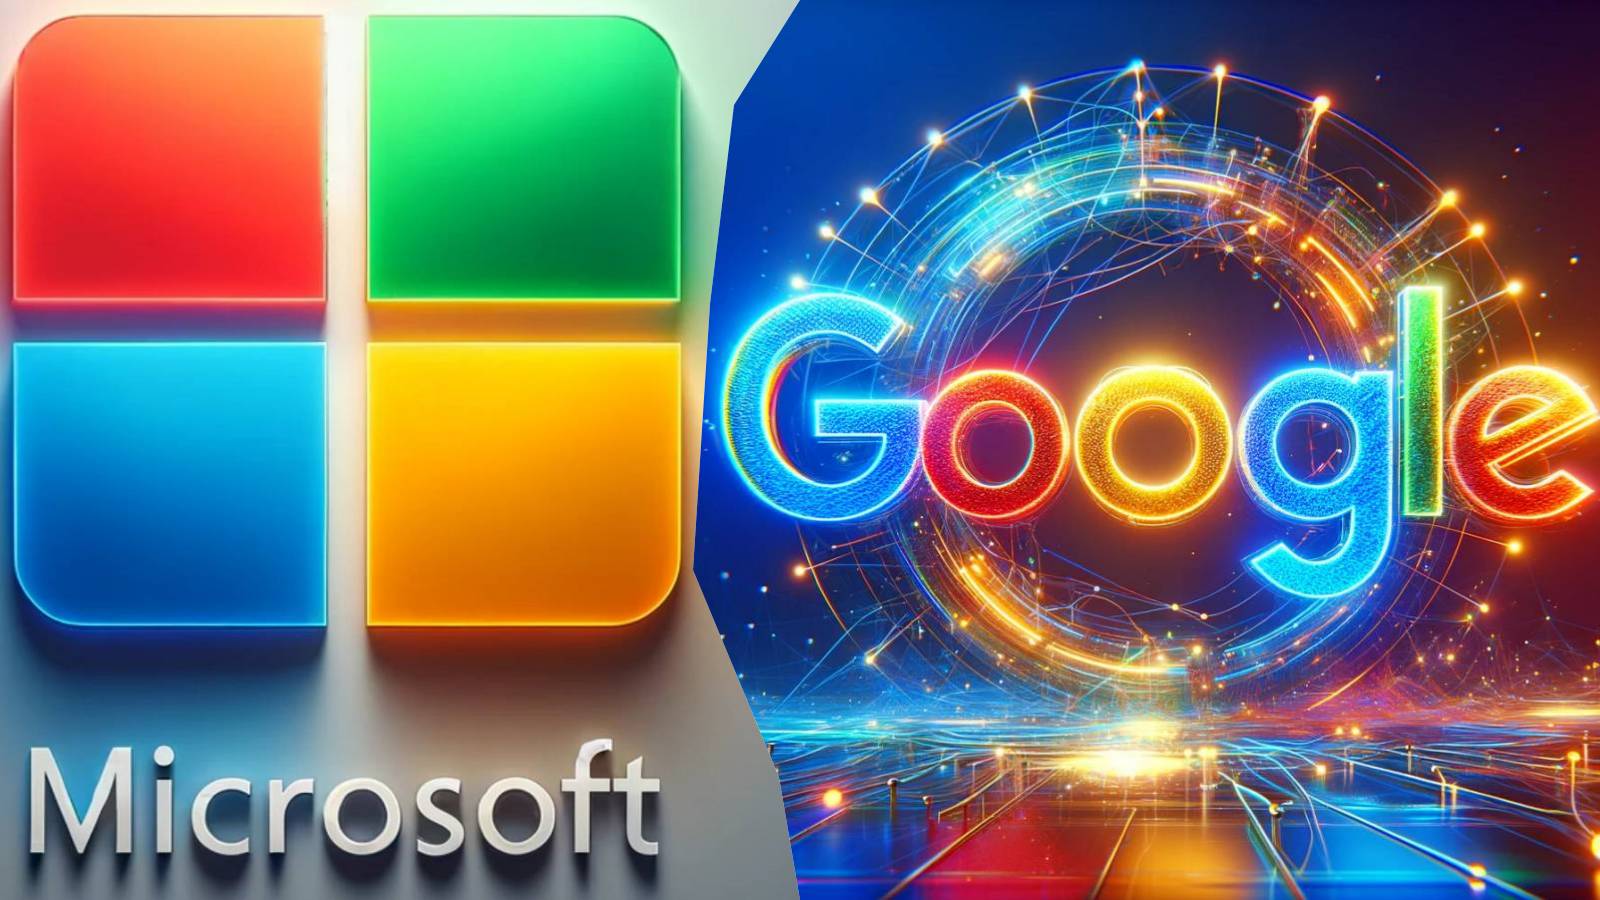 Microsoft Hårda ANSKÄLLNINGAR mot Google som begär ingripande från Europeiska kommissionen